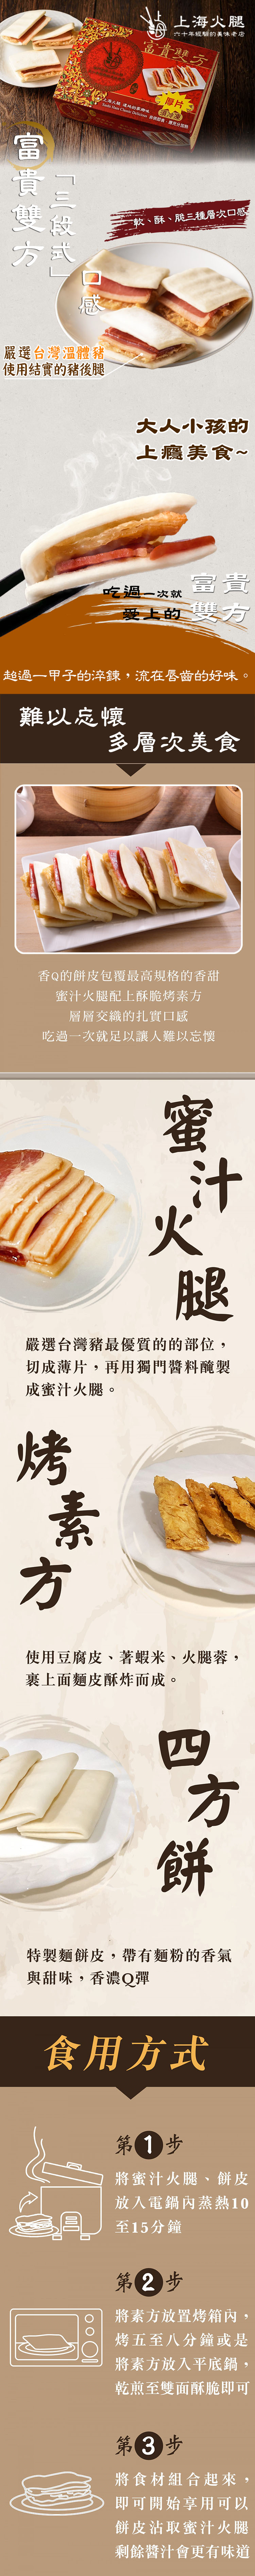 【上海火腿】蜜汁火腿富貴雙方(12份/盒) 南門市場六十年老店